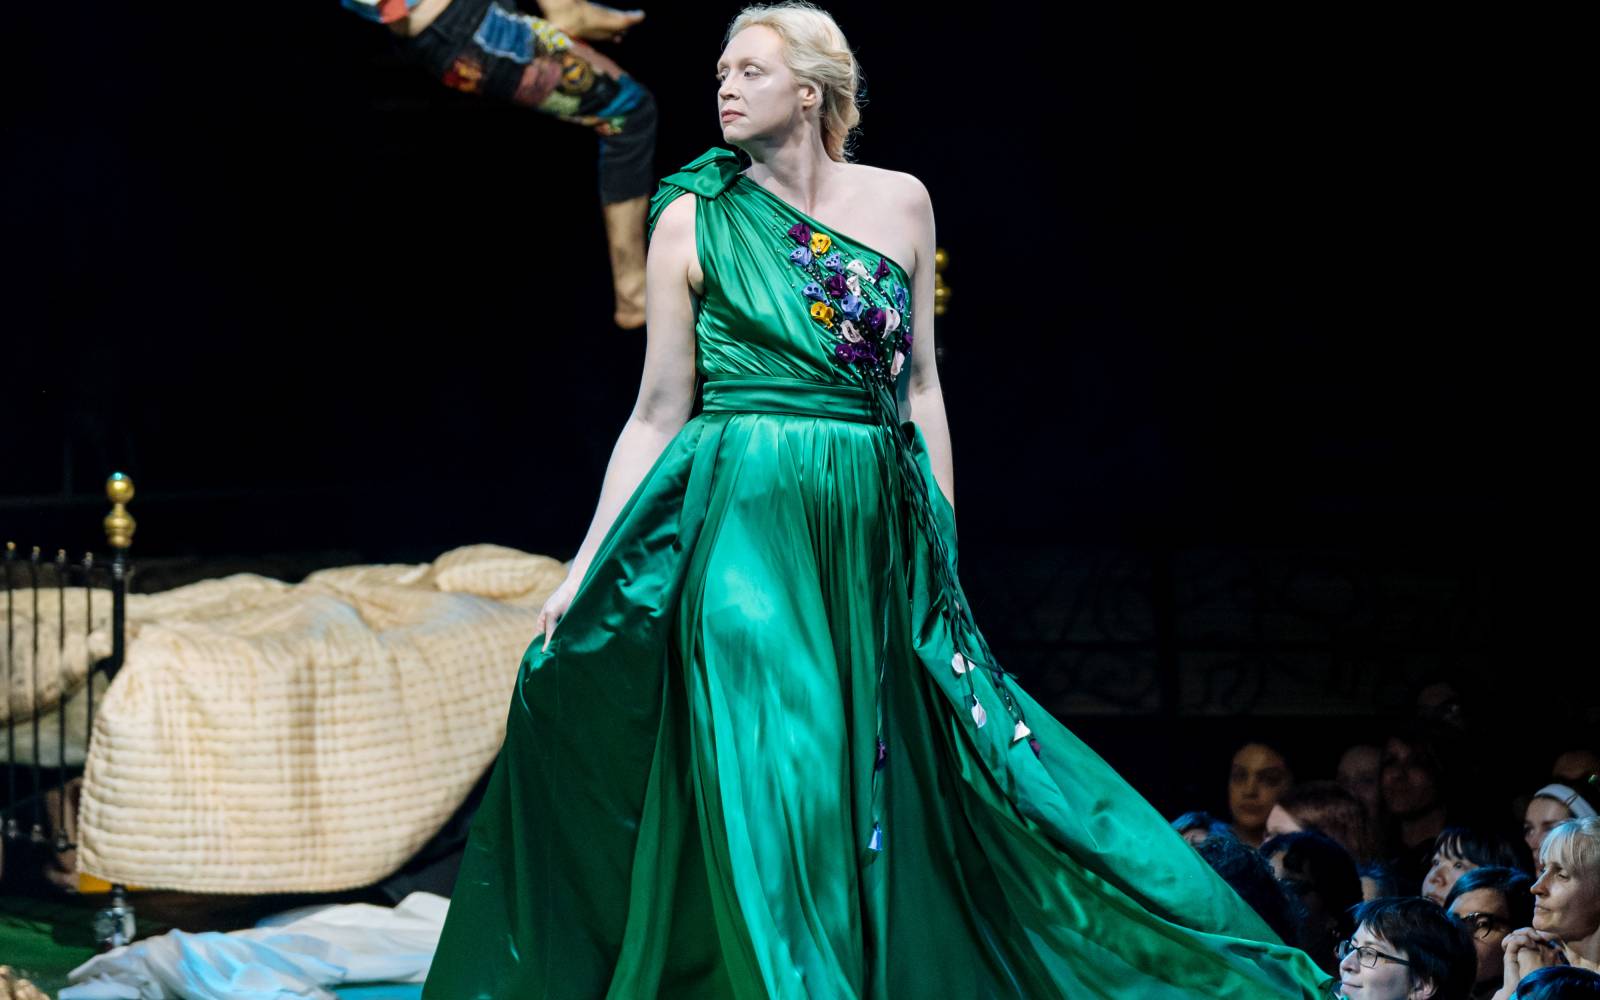 Gwendoline Christie (Hippolyta) strides forward, her emerald green dress billowing behind her